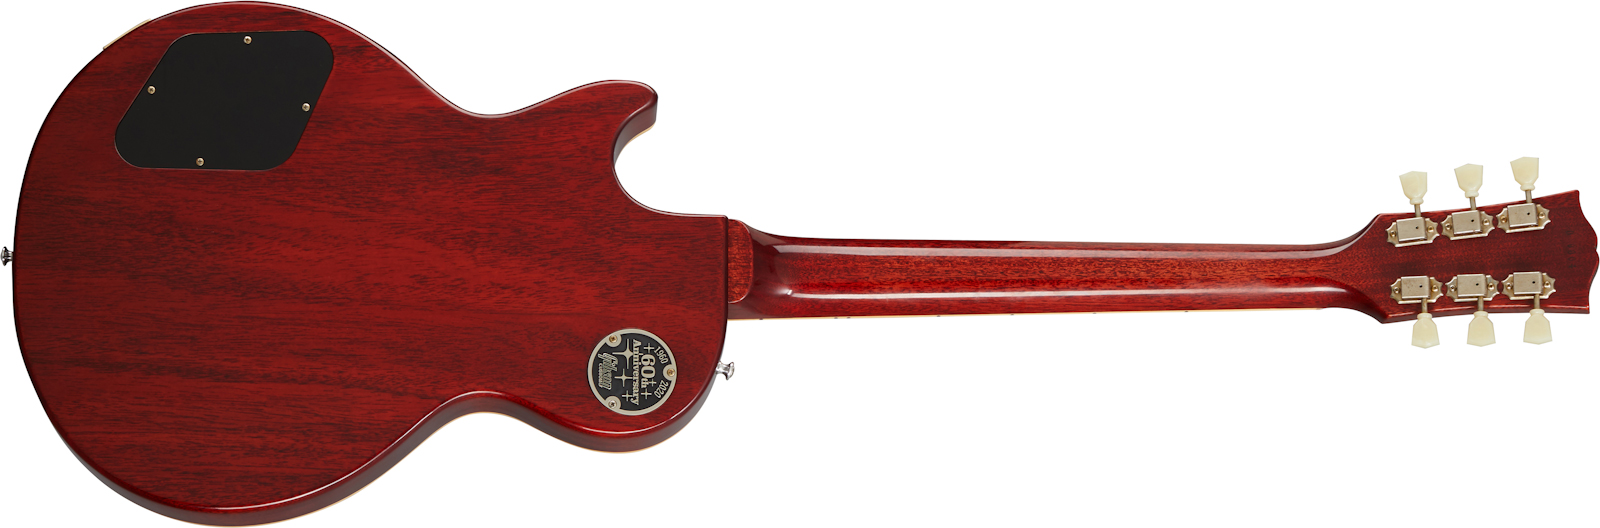 Gibson Custom Shop Les Paul Standard 1960 V1 60th Anniversary 2h Ht Rw - Vos Deep Cherry Sunburst - Guitare Électrique Single Cut - Variation 1